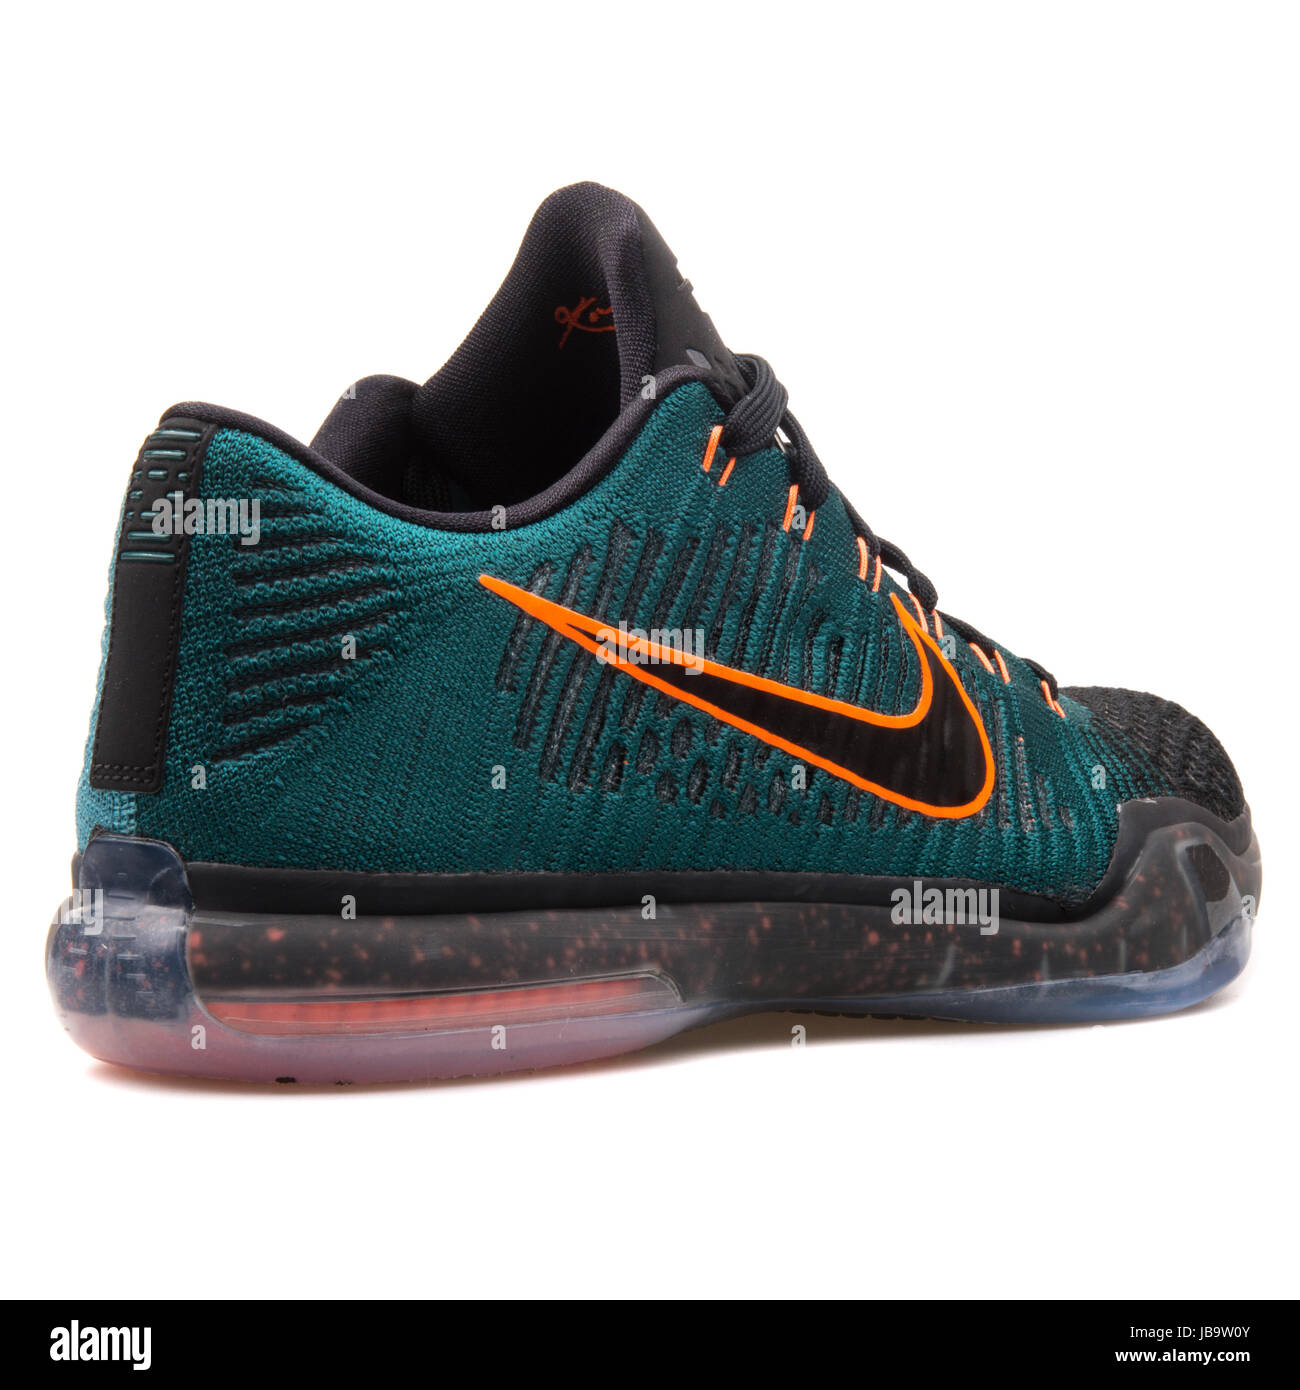 Kobe Nike Elite X Noir faible, vert foncé et orange pour homme - Chaussures  747212-303 Photo Stock - Alamy